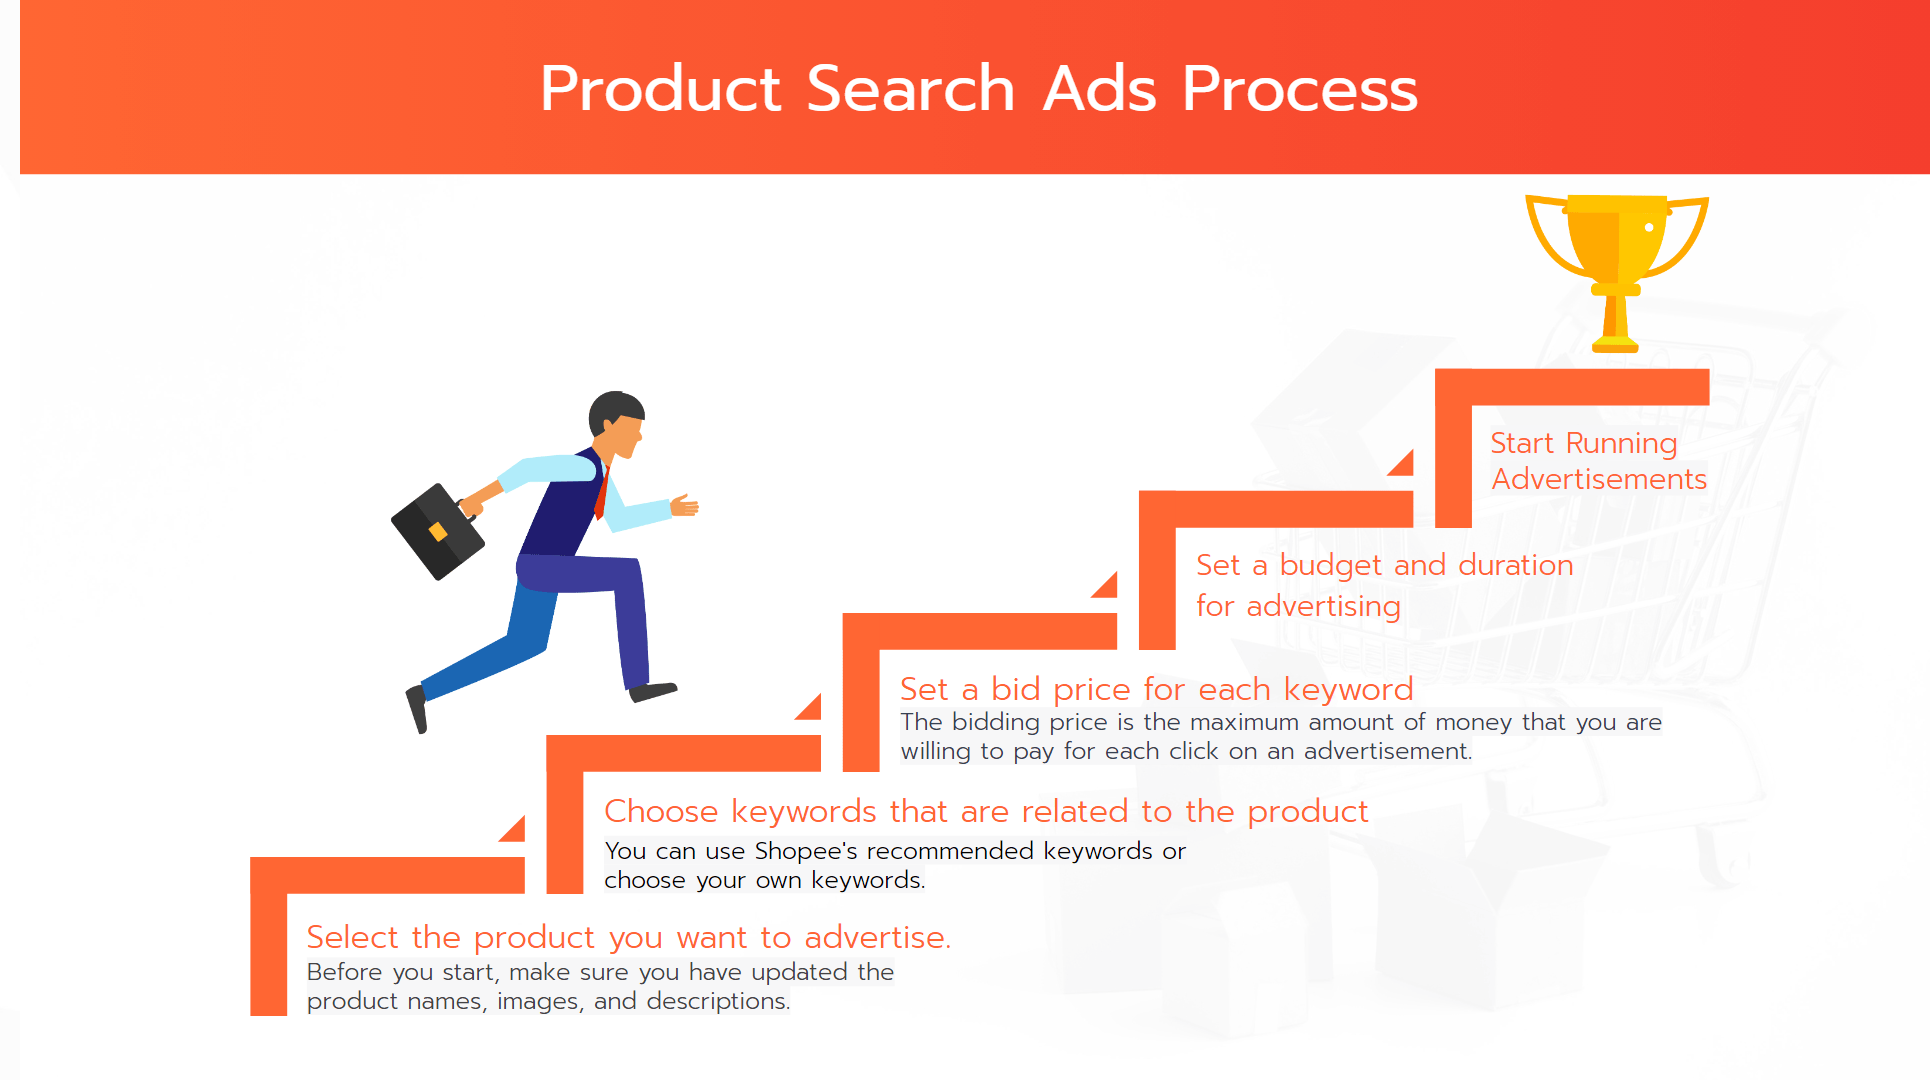 Shopee-Ads-TBS-Marketing 2023 on Slide 7-min